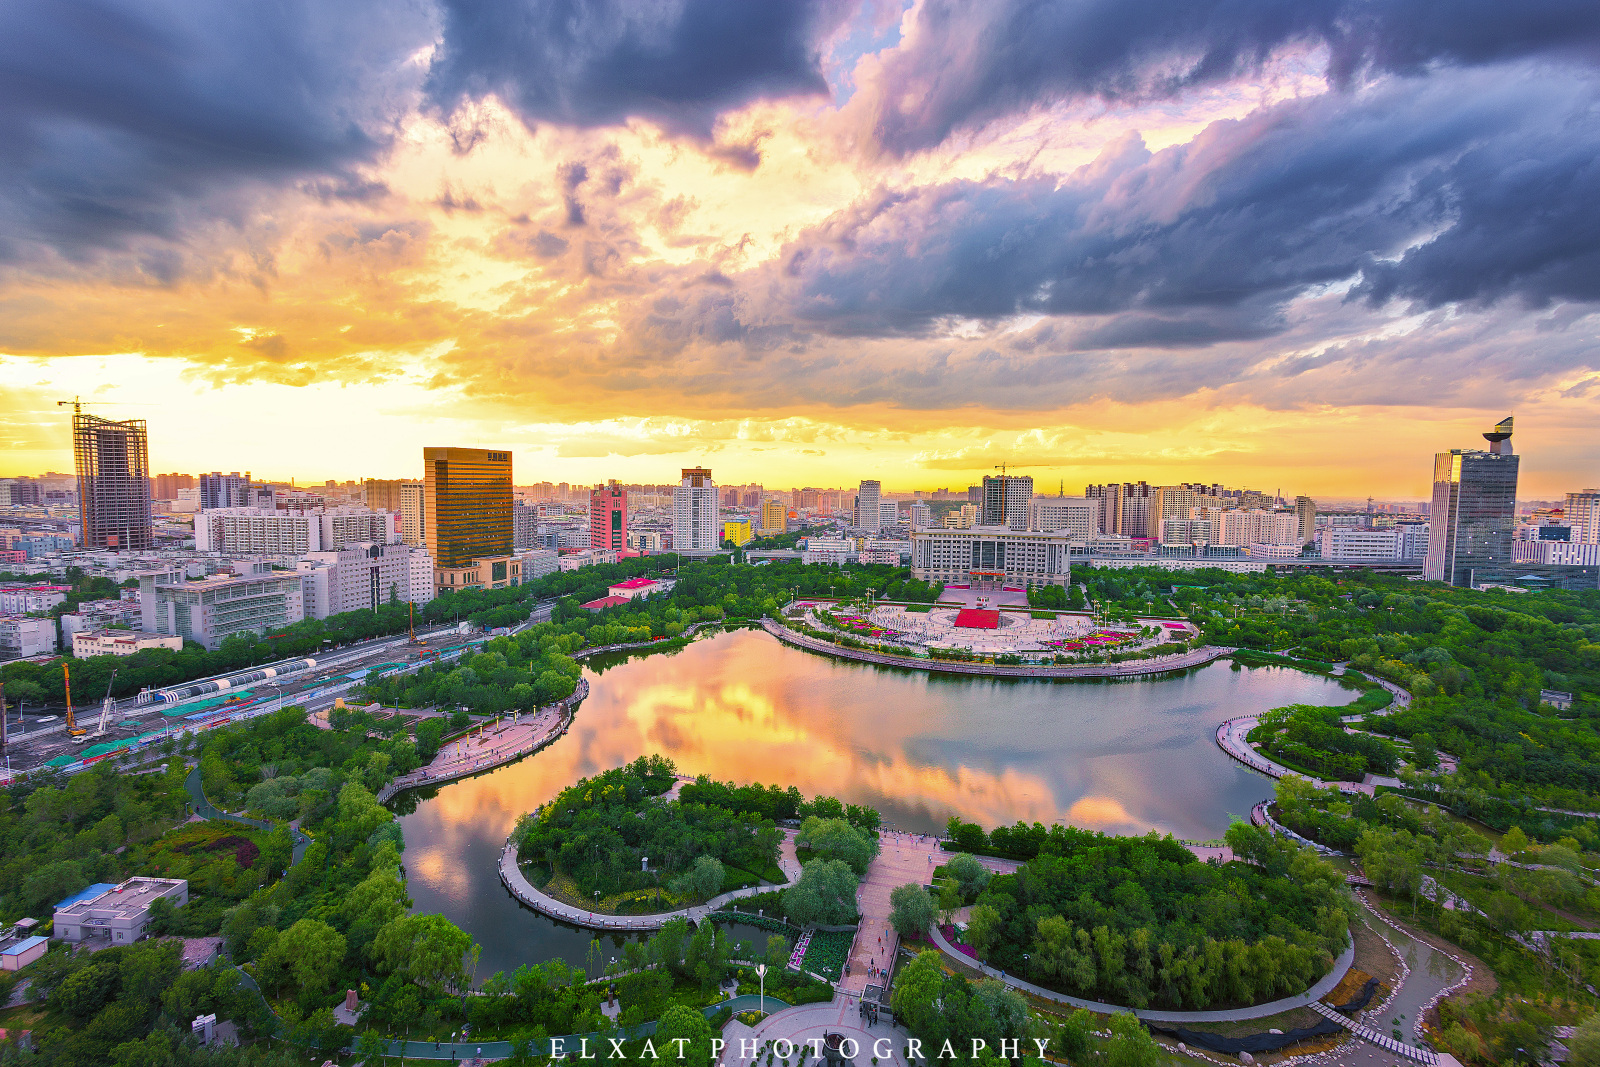 太阳宫公园颇具特色的“龙形水系”水景区